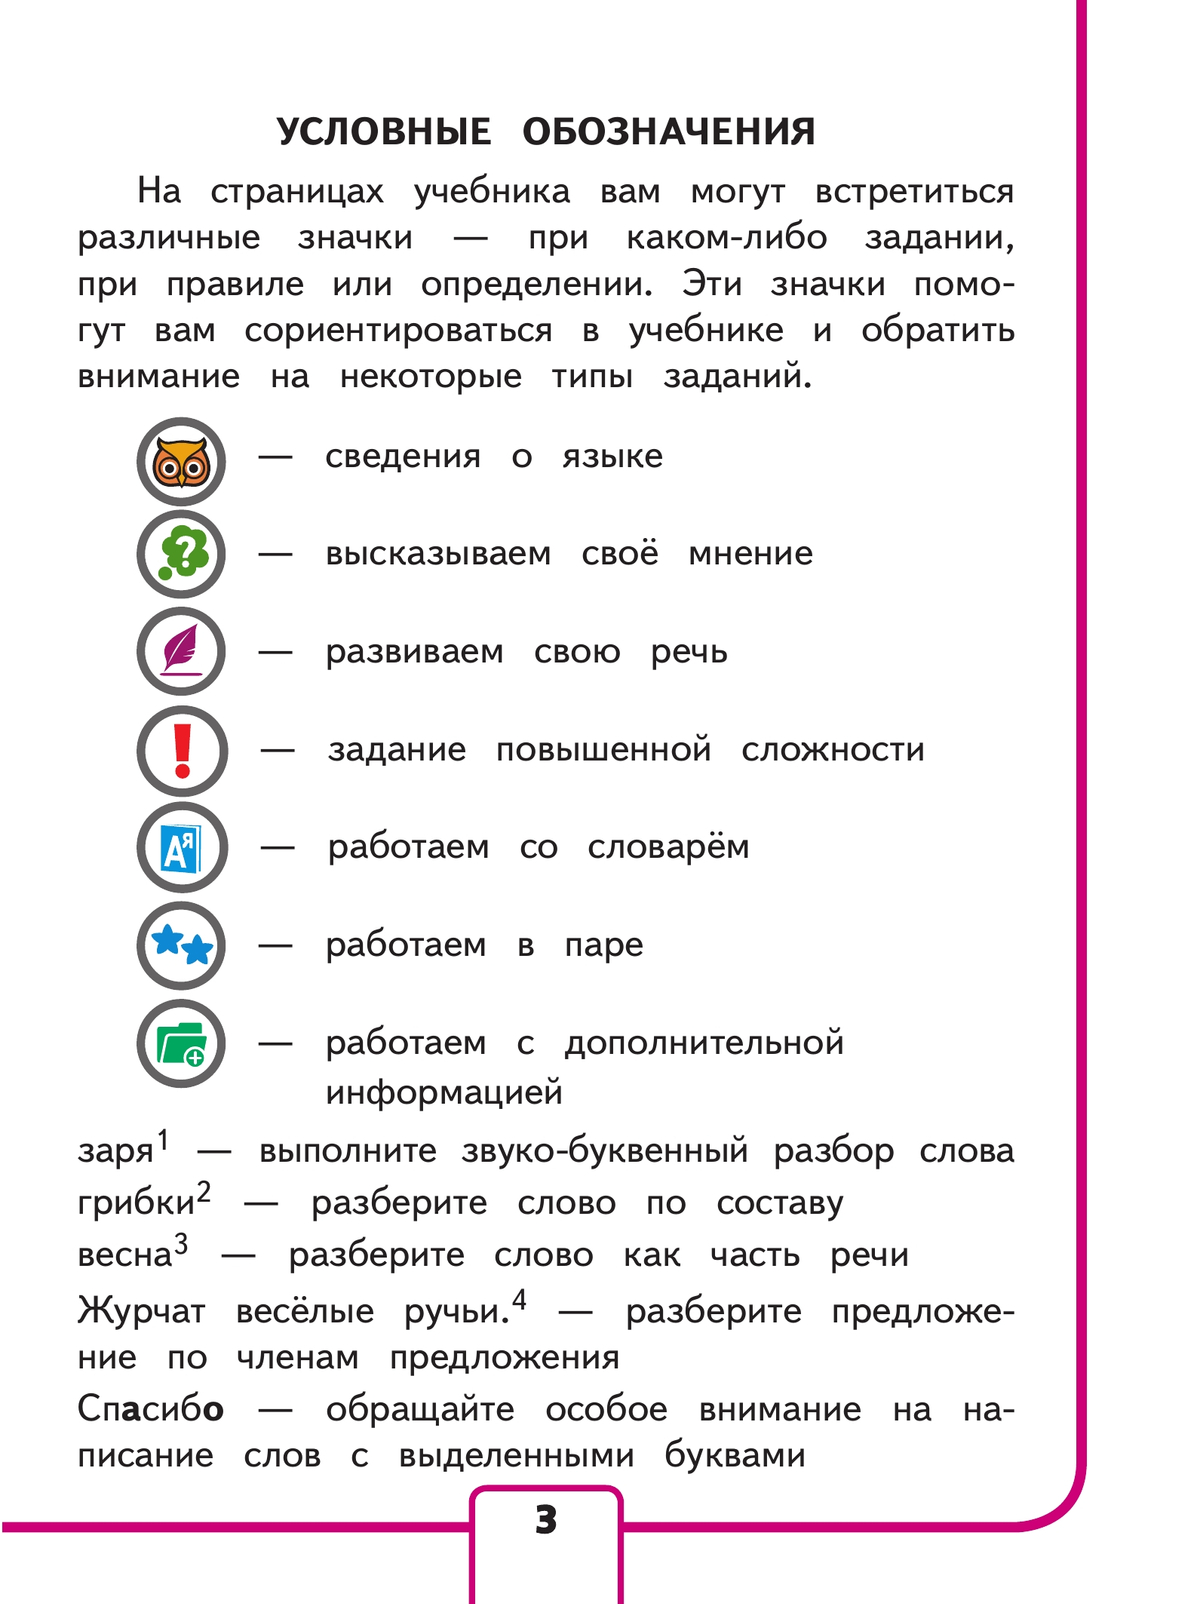 Русский язык. 3 класс. Учебное пособие. В 5 ч. Часть 4 (для слабовидящих обучающихся) 6